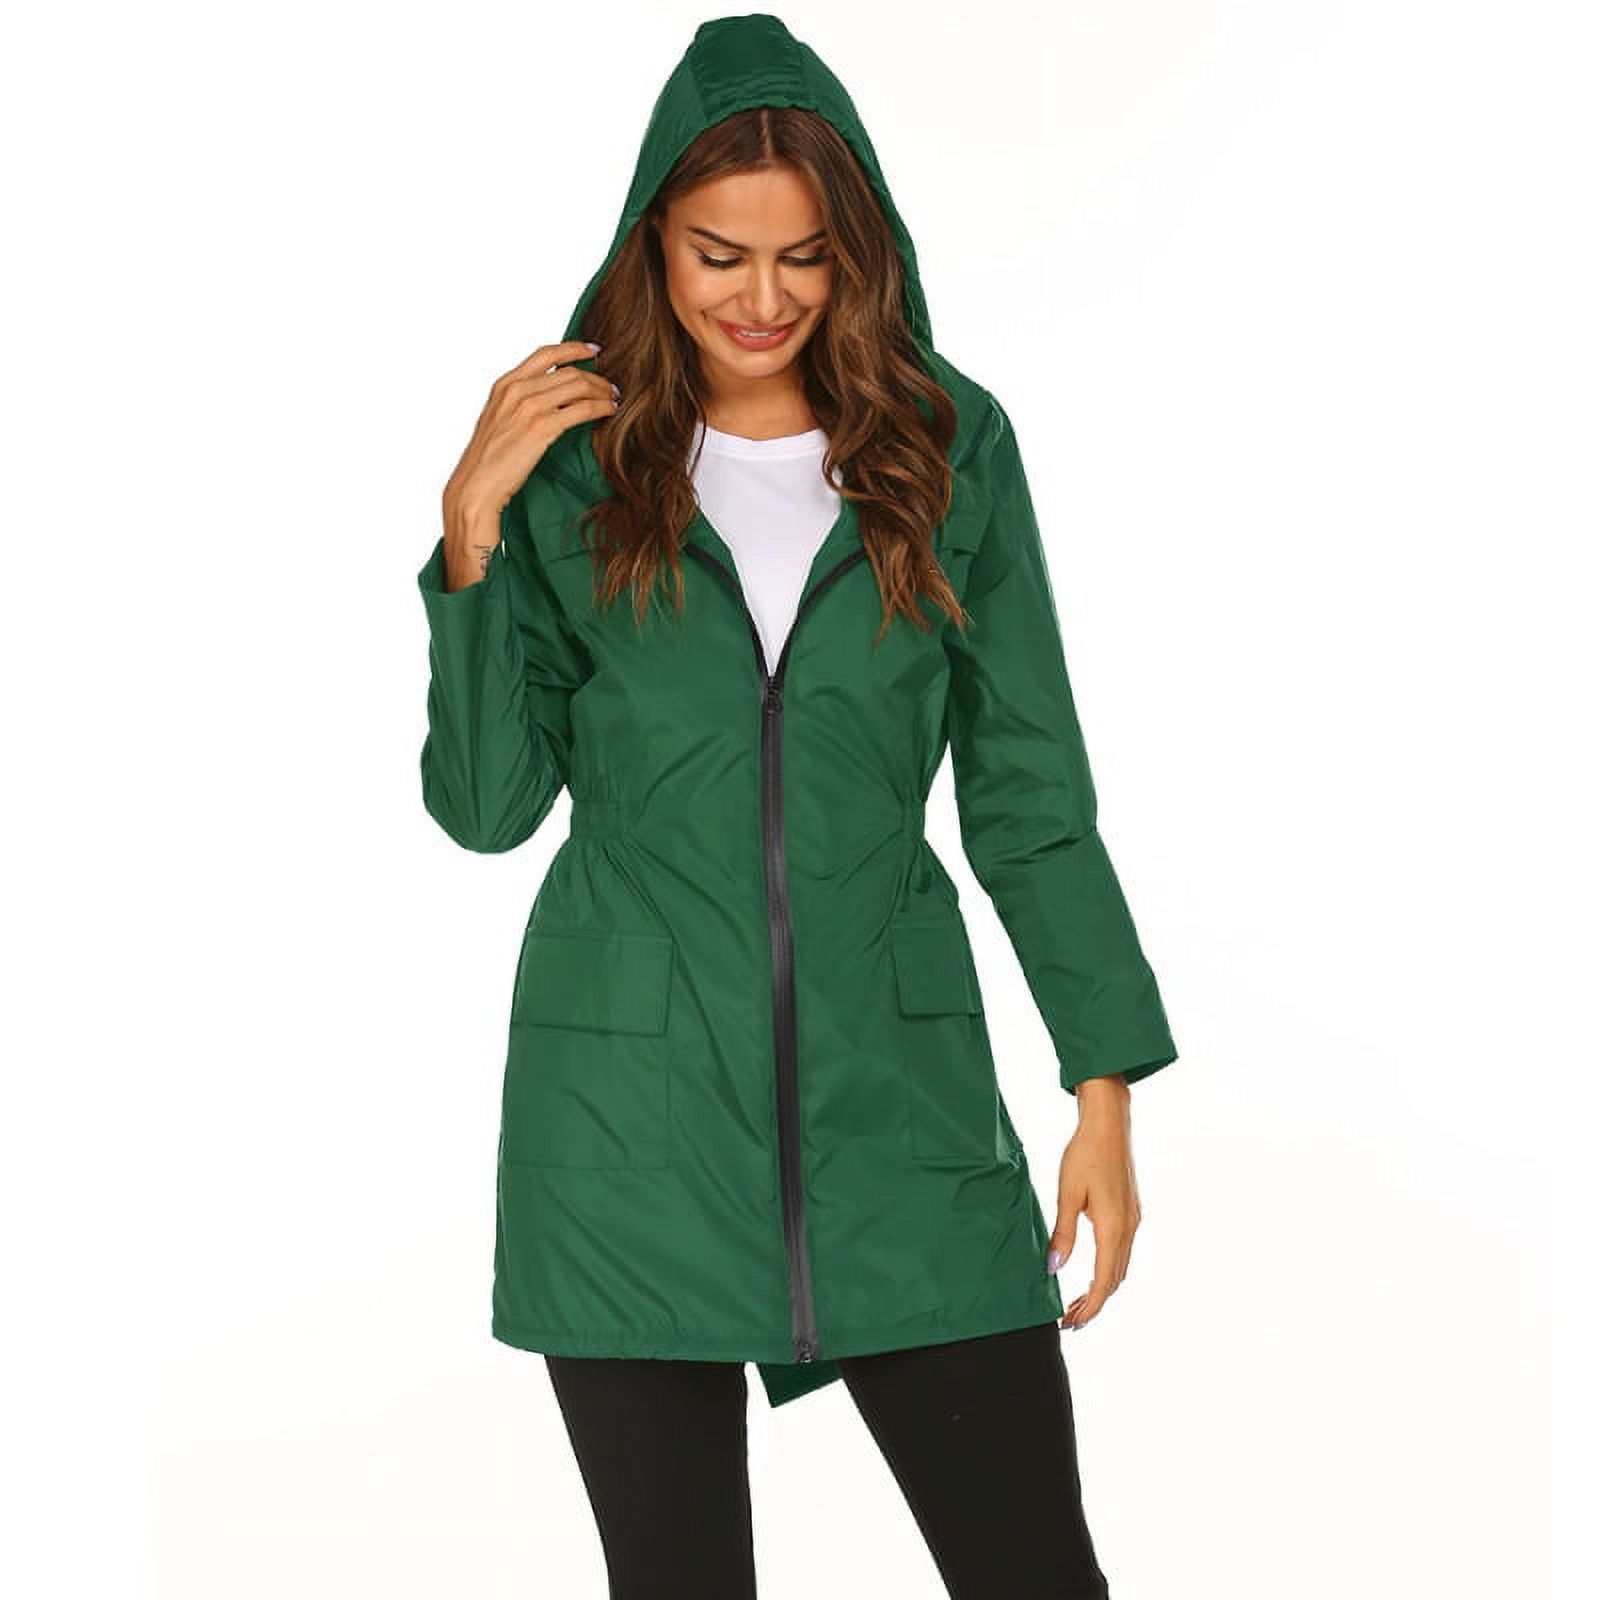 Women Waterproof Lightweight Rain Jacket Packable Outdoor Hooded Raincoat - image 3 of 5